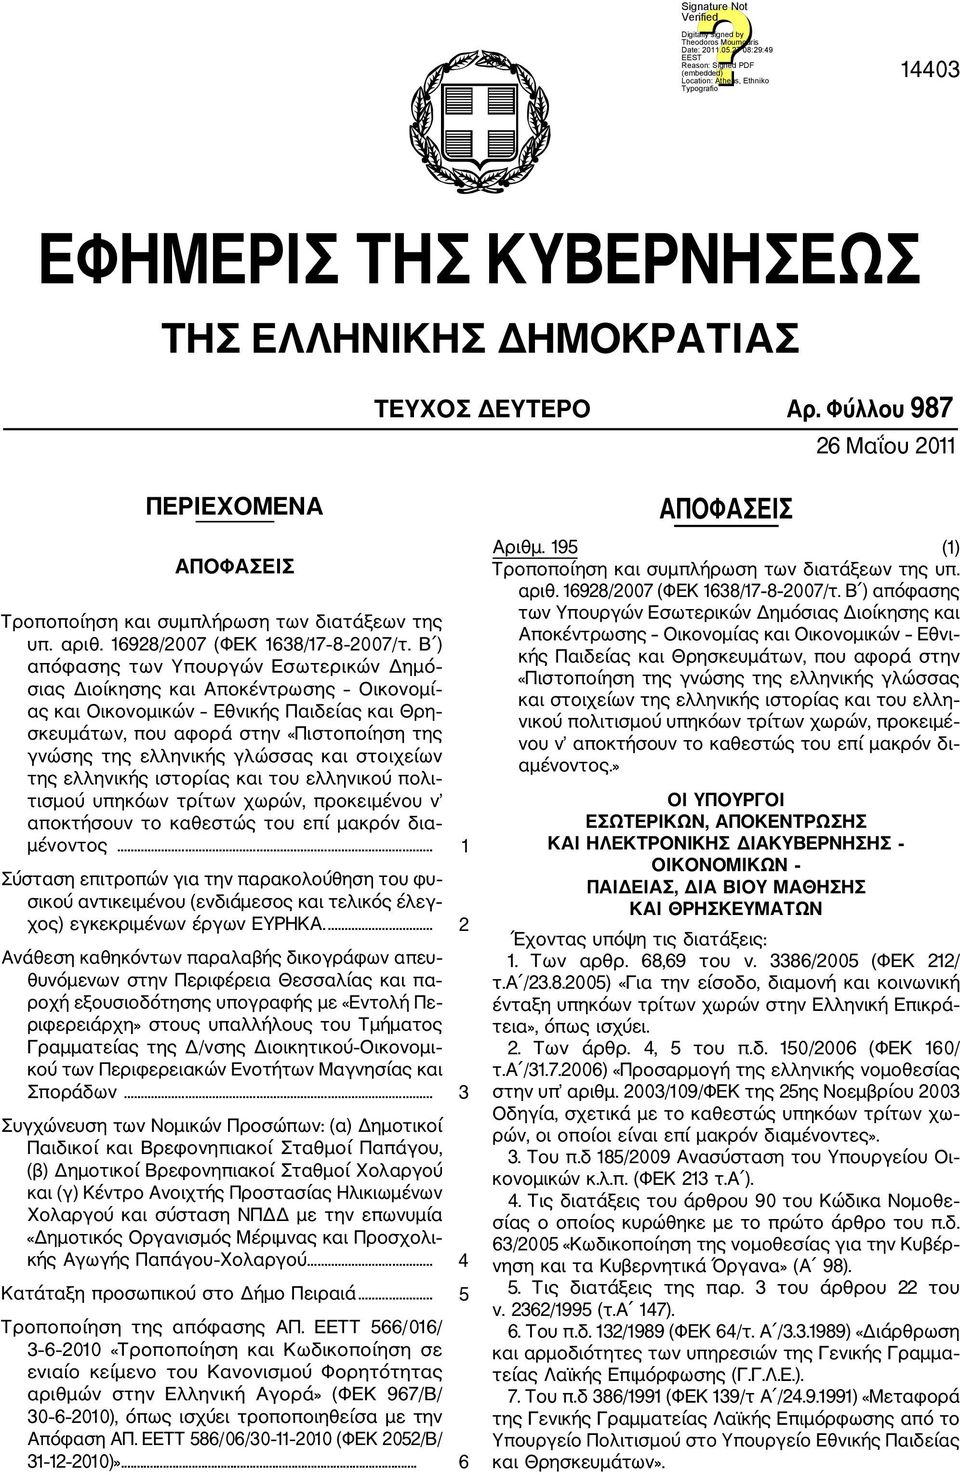 Β ) απόφασης των Υπουργών Εσωτερικών Δημό σιας Διοίκησης και Αποκέντρωσης Οικονομί ας και Οικονομικών Εθνικής Παιδείας και Θρη σκευμάτων, που αφορά στην «Πιστοποίηση της γνώσης της ελληνικής γλώσσας